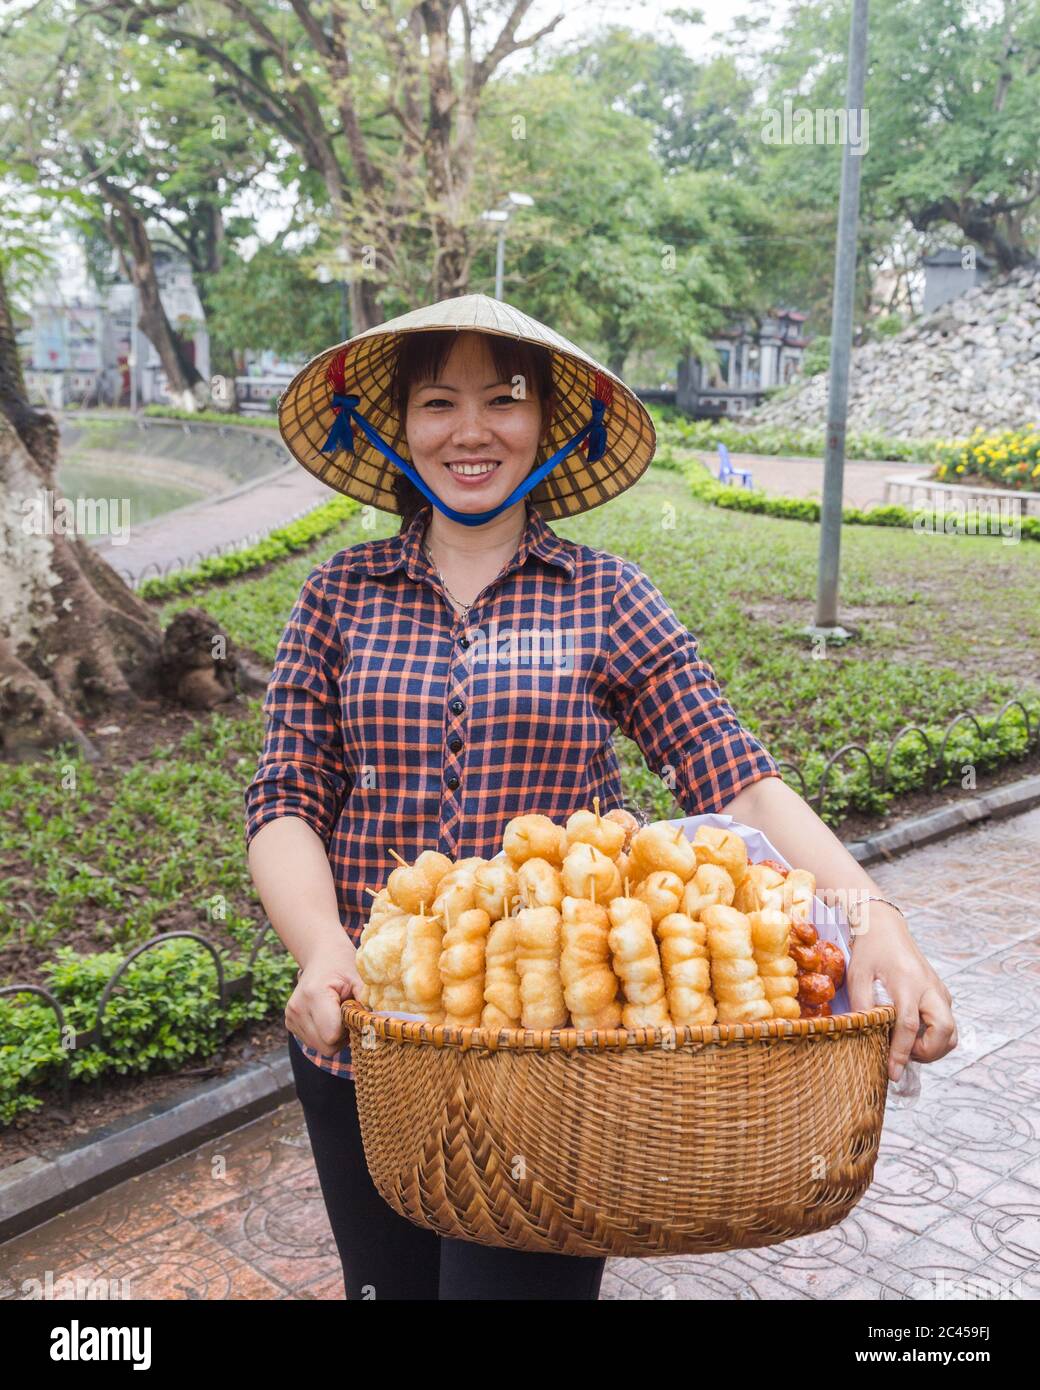 HANOI, VIETNAM, 19. MÄRZ 2017: Eine einheimische Dame in Hanoi verkauft süße Leckereien. Die Dame trägt einen traditionellen Kegelhut, der auf Vietnam üblich ist Stockfoto